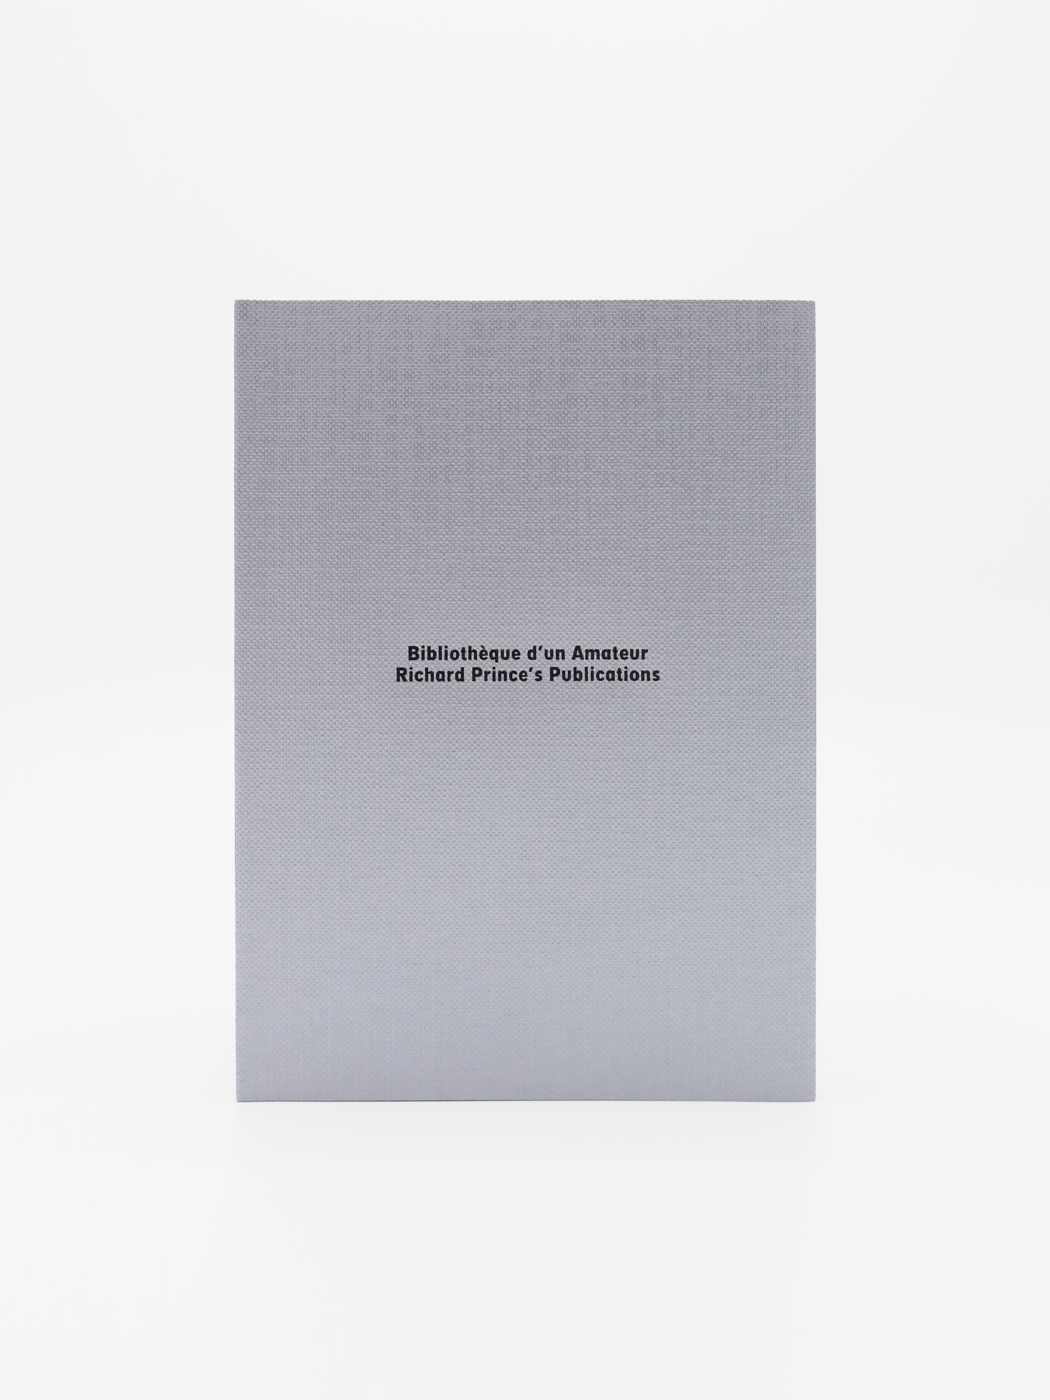 Bibliothèque d’un Amateur: Richard Prince’s Publications